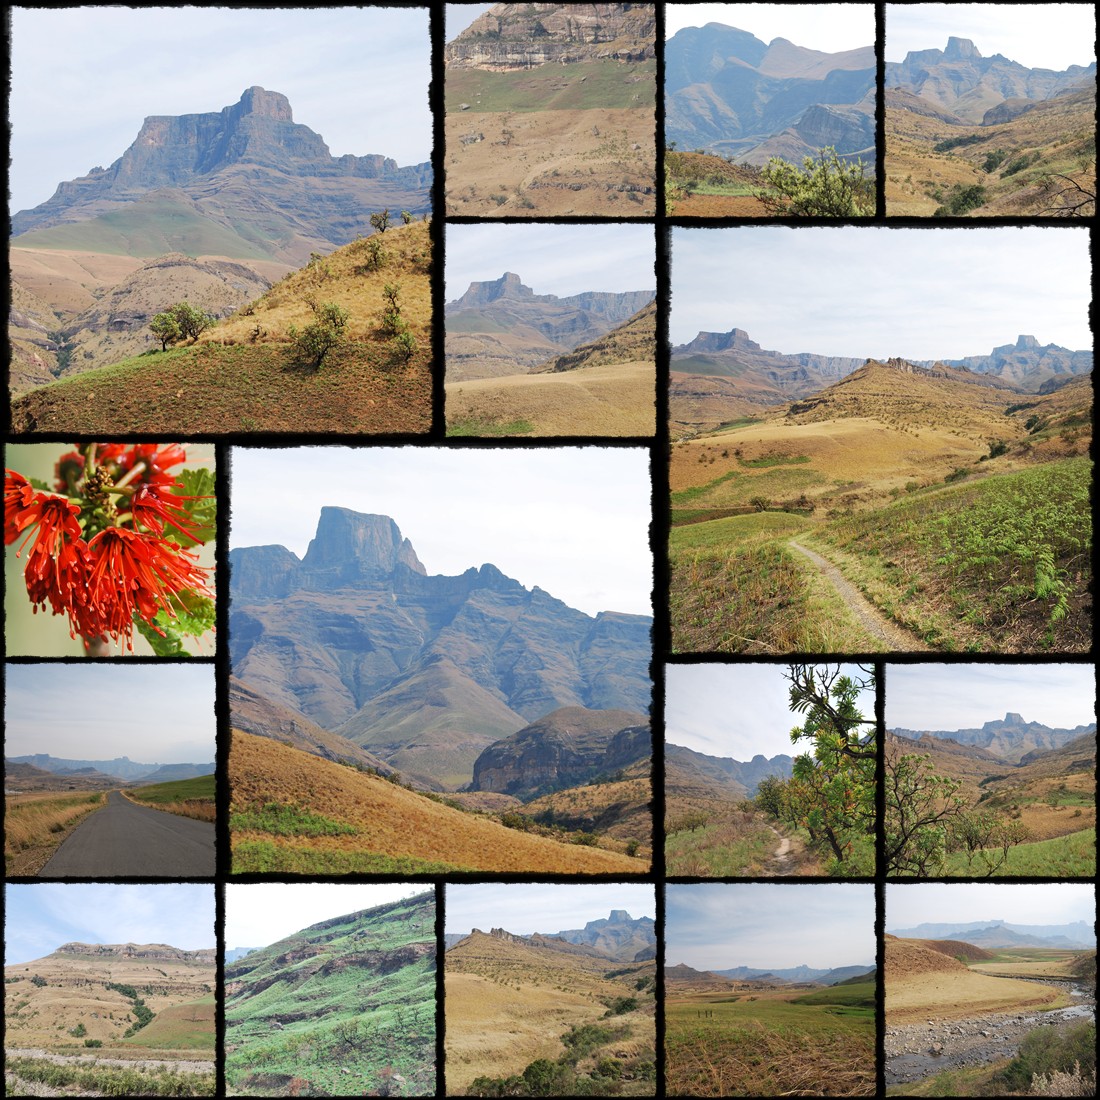 Drakensberg, drakensberg escarpment, Góry Smocze, Amphitheatre Peak, Cathedral Peak, uKhahlamba Drakensberg Park